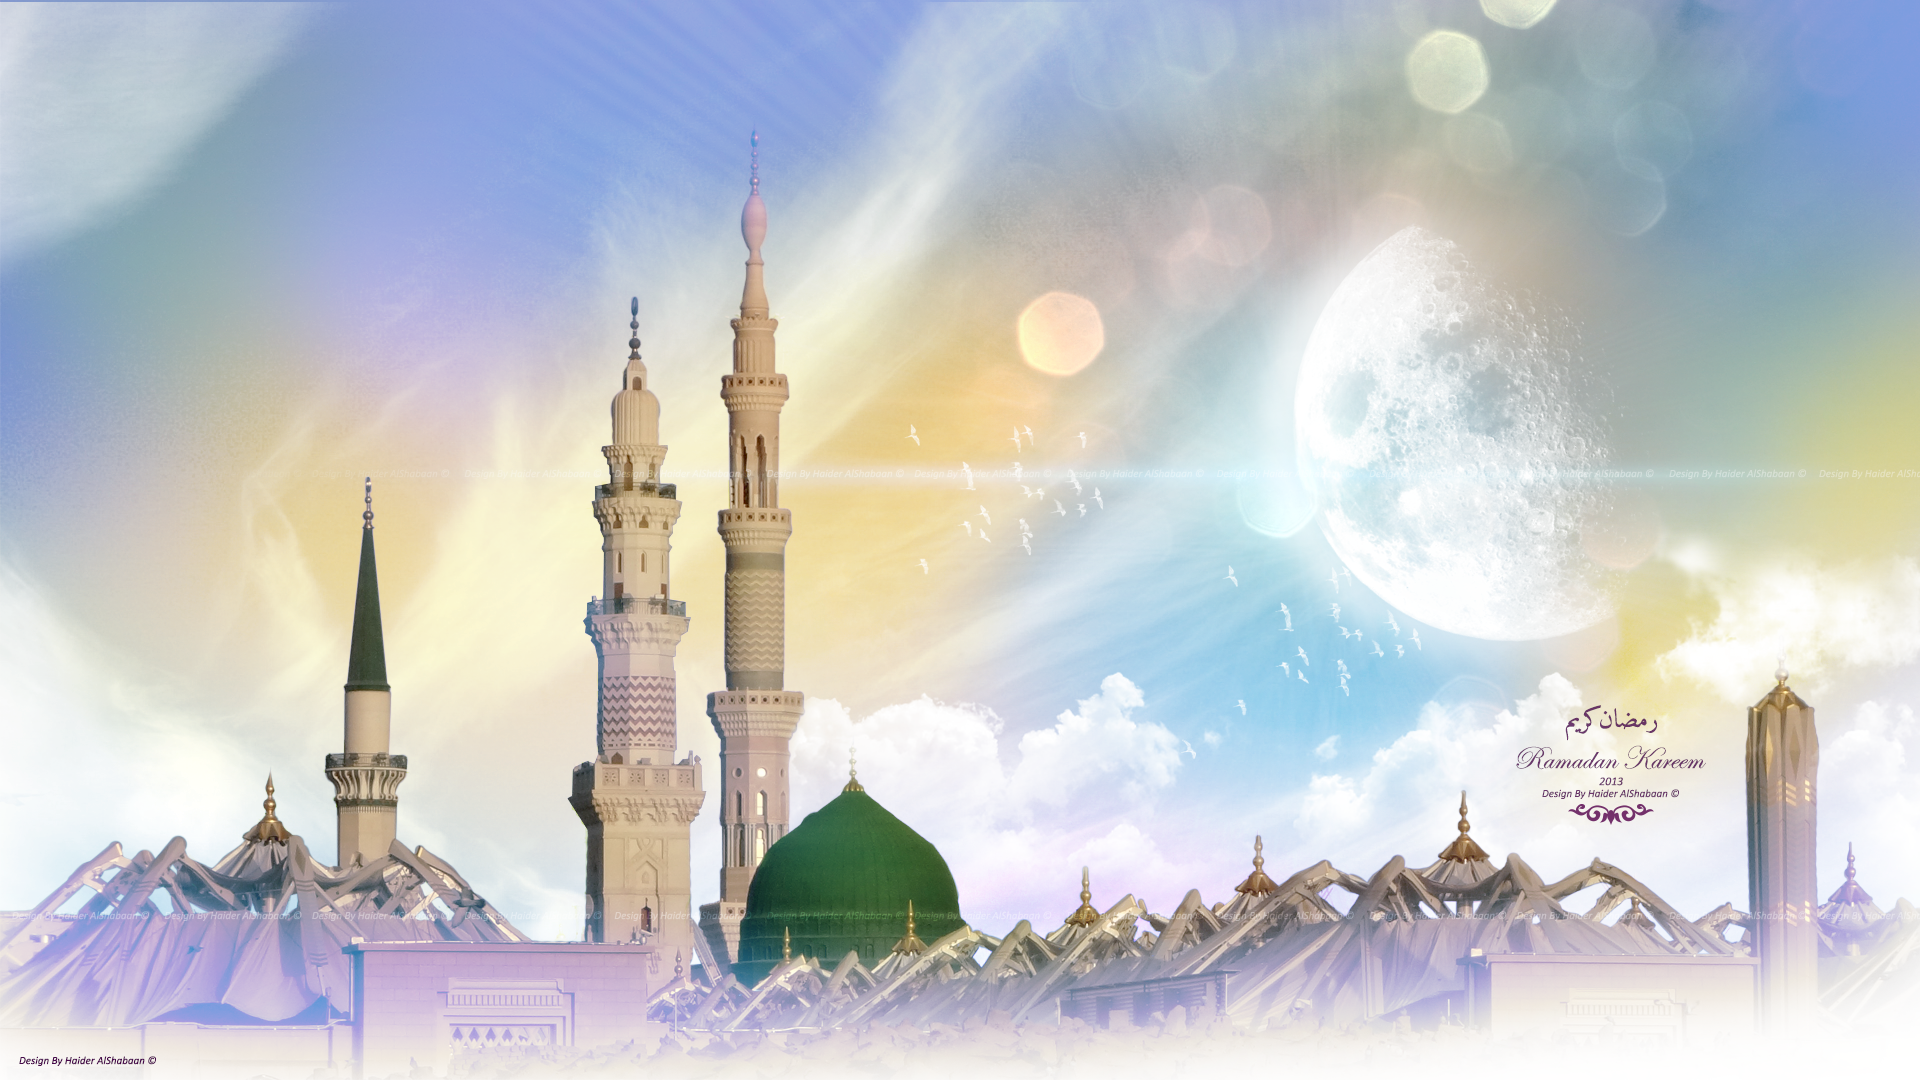 Обои в стиле рамадан. Исламский фон. Мечеть фон. Рамадан фон. Фон для мусульман.